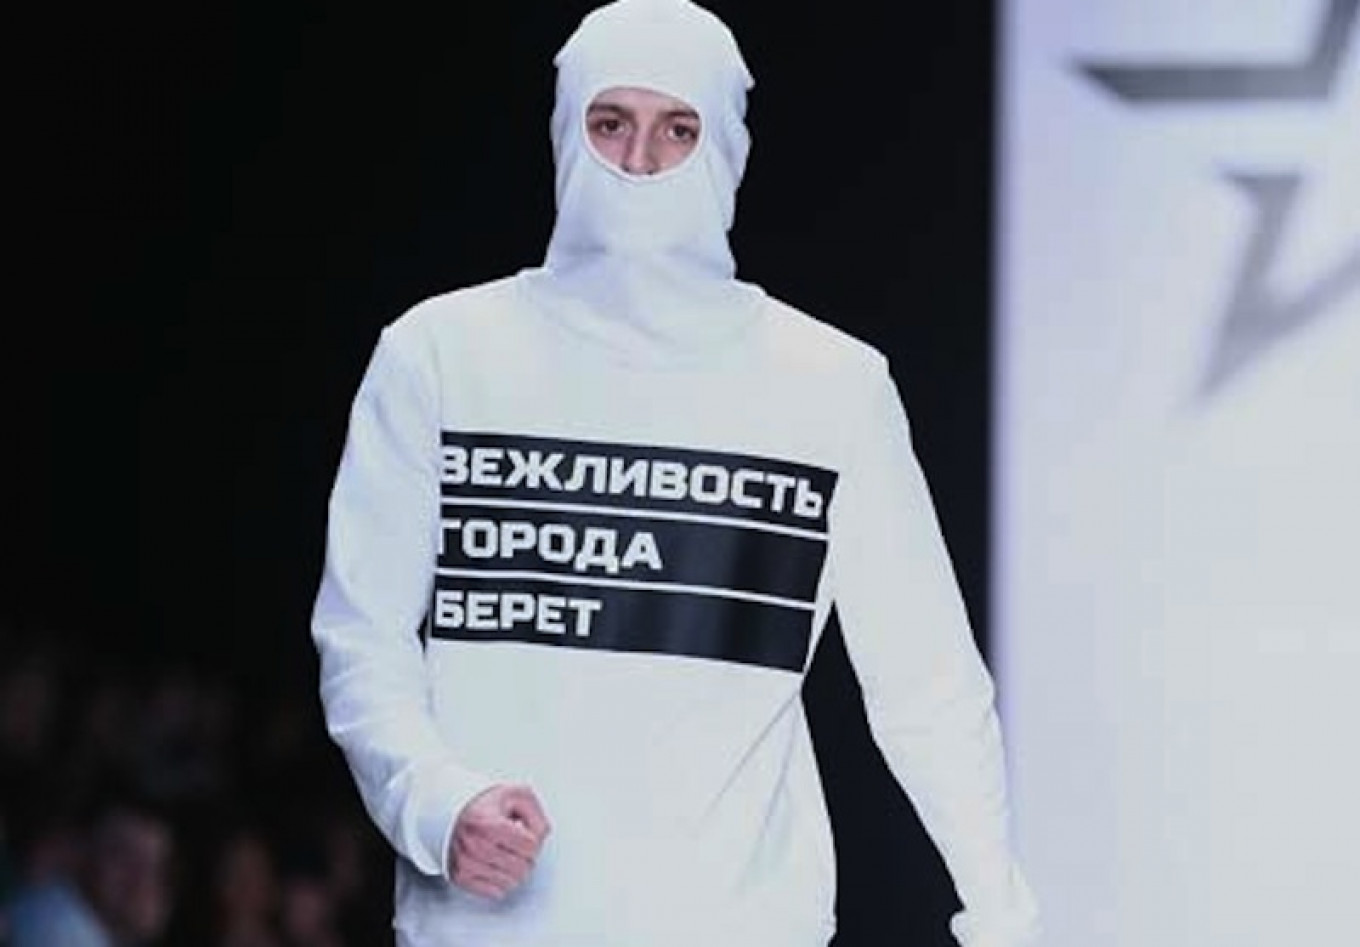 Desain Leonid Alexeyev mengangkat tema 'orang-orang yang sopan', sebutan untuk tentara Rusia di Krimea.  Pekan Mode Mercedes-Benz